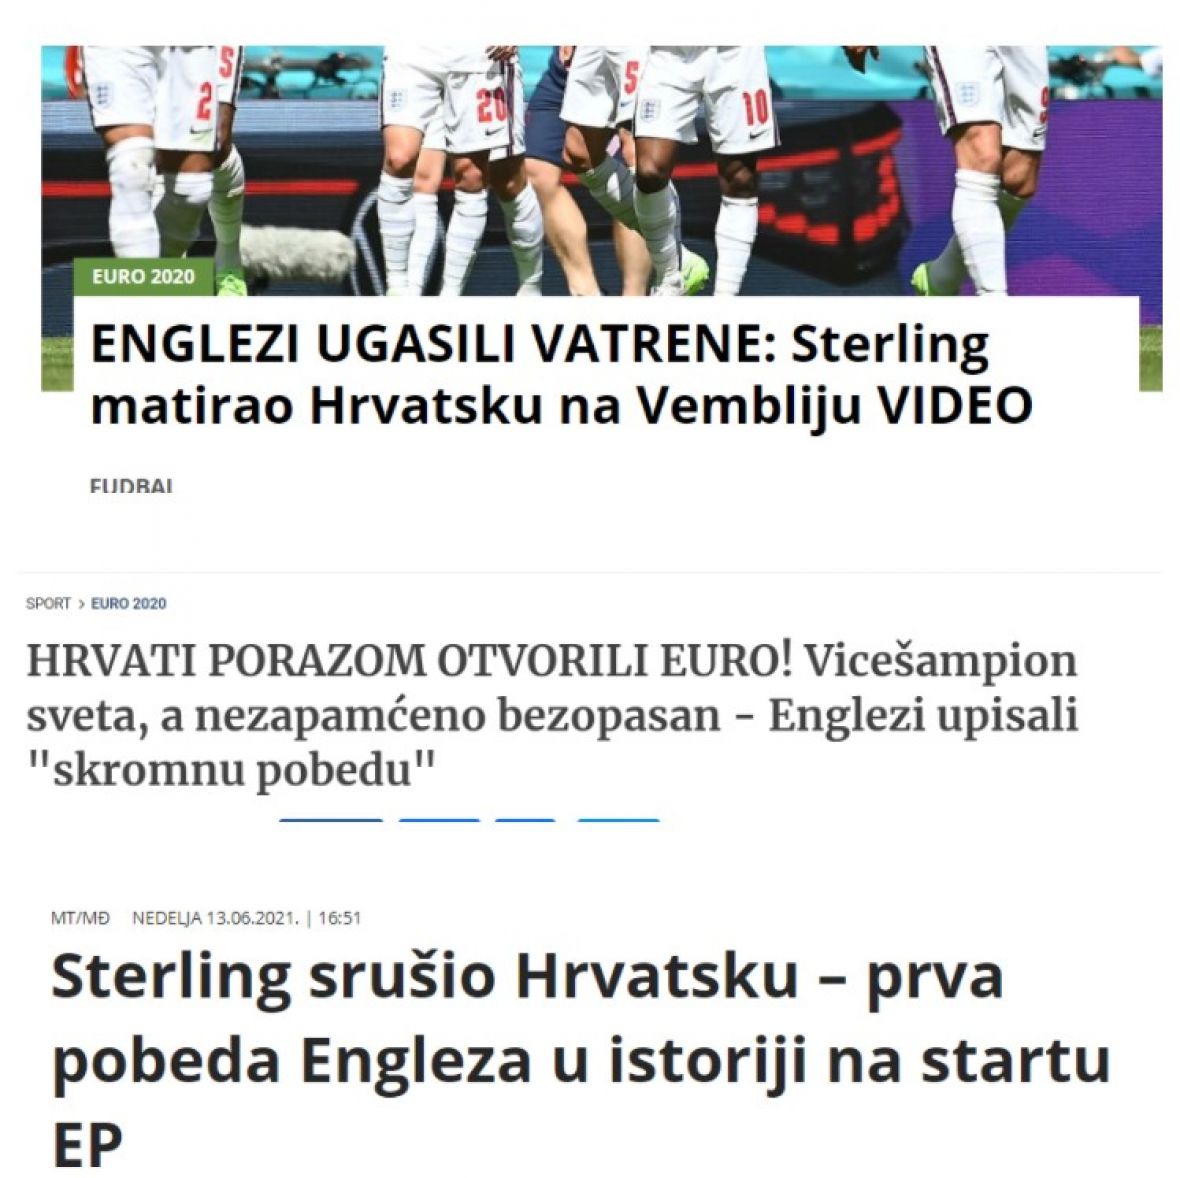 Srbijanski mediji bombastičnim naslovima pišu o porazu Hrvatske - undefined